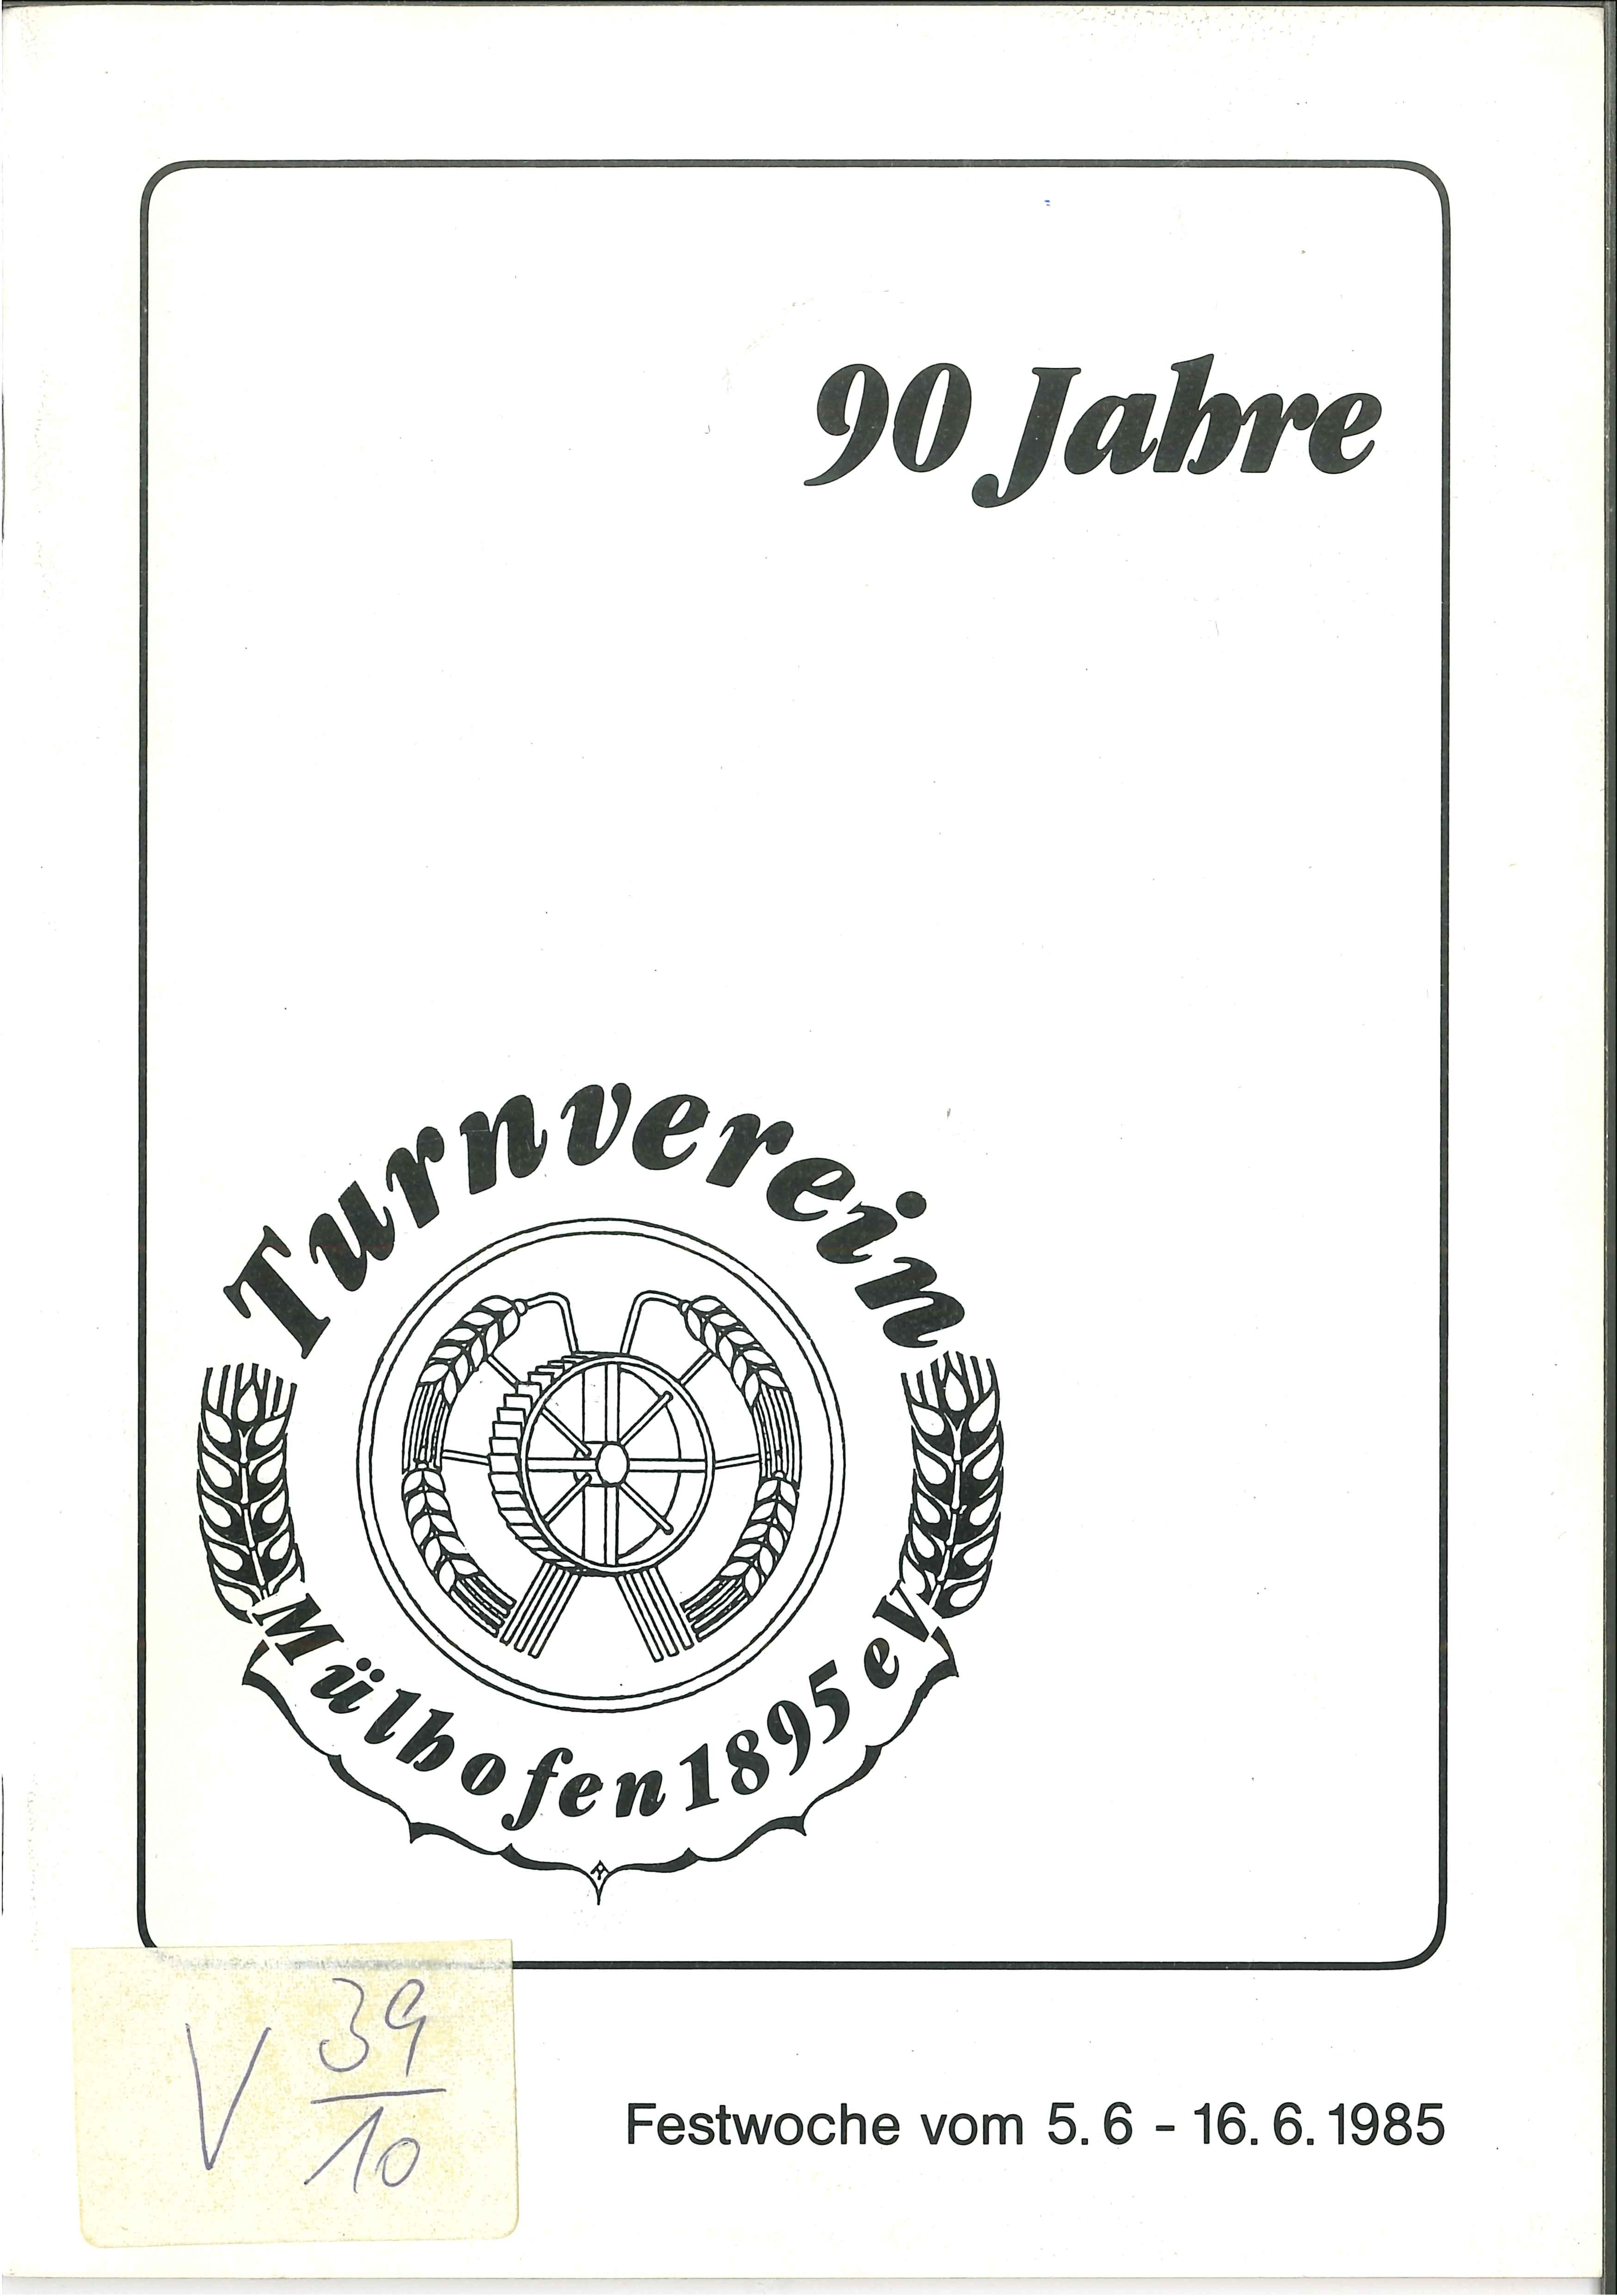 Festschrift Turnverein Mülhofen 1885 e. V. (Rheinisches Eisenkunstguss-Museum CC BY-NC-SA)